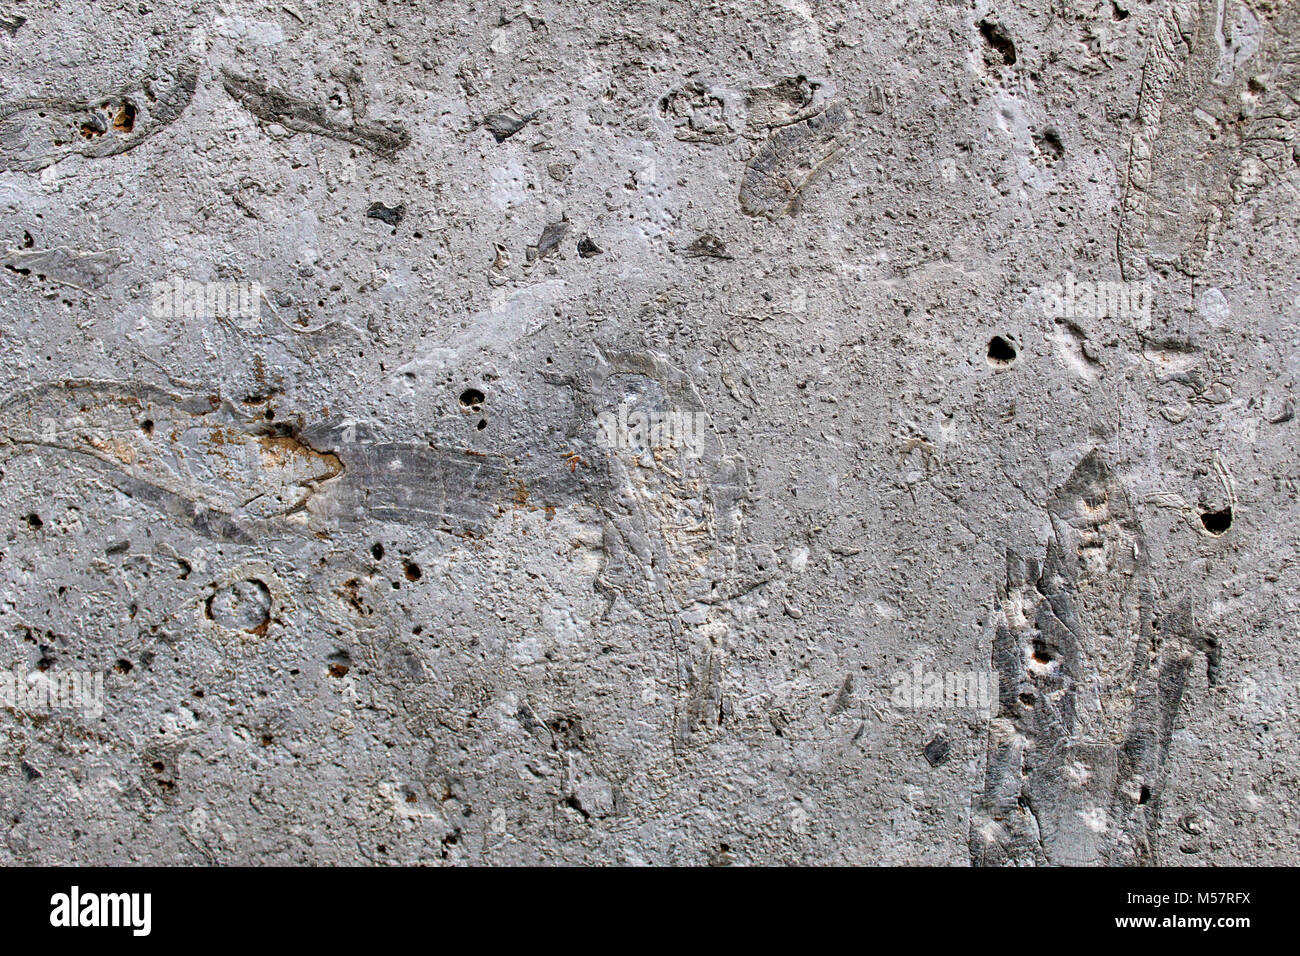 Fósiles marinos en una losa de roca caliza utilizada como piedra decorativa Foto de stock